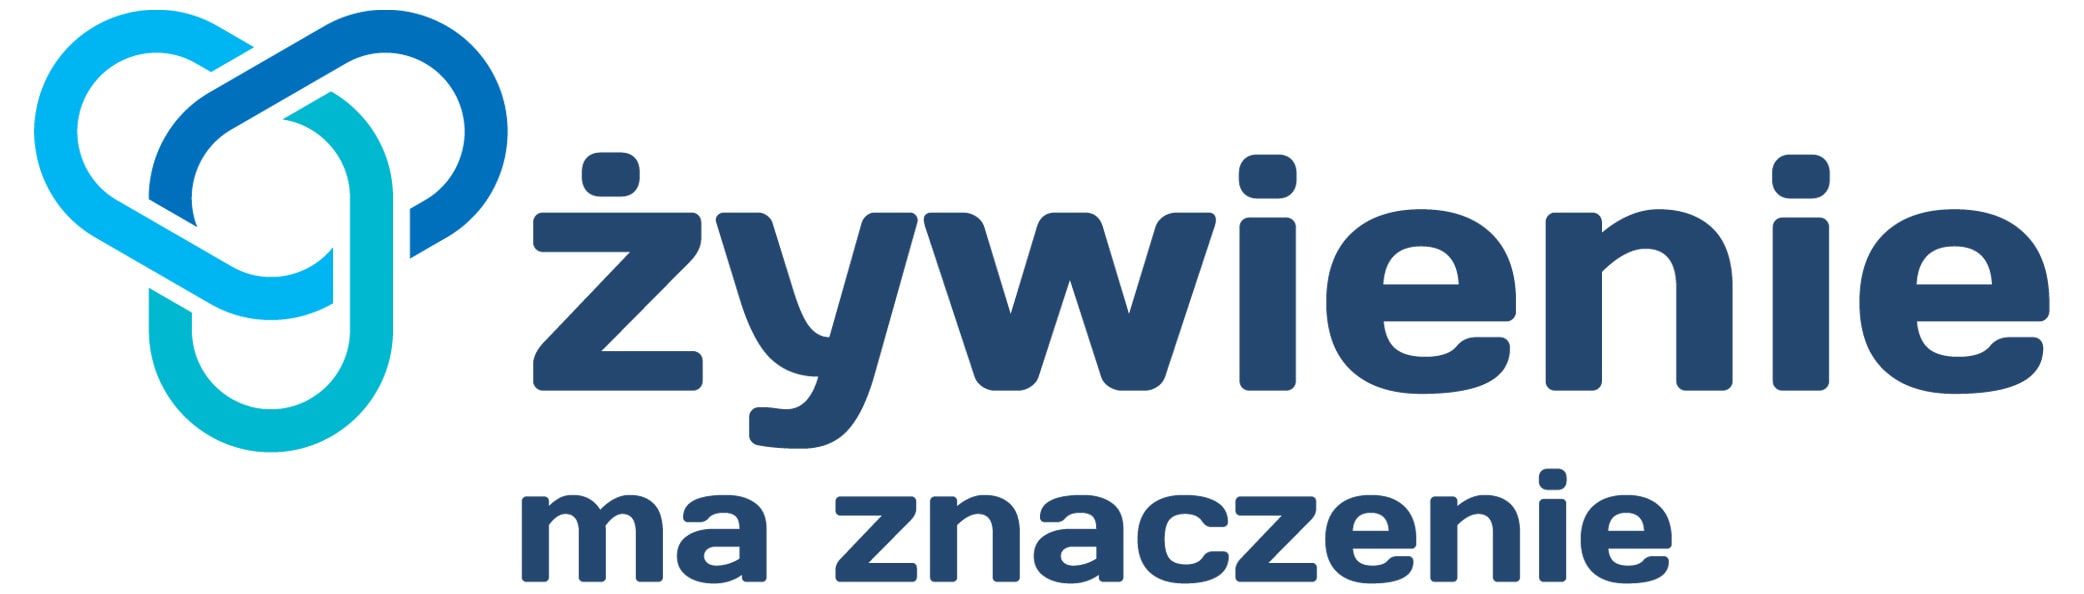 Logotyp domeny zywieniemaznaczenie.pl obok hasła 'Żywienie ma znaczenie'.